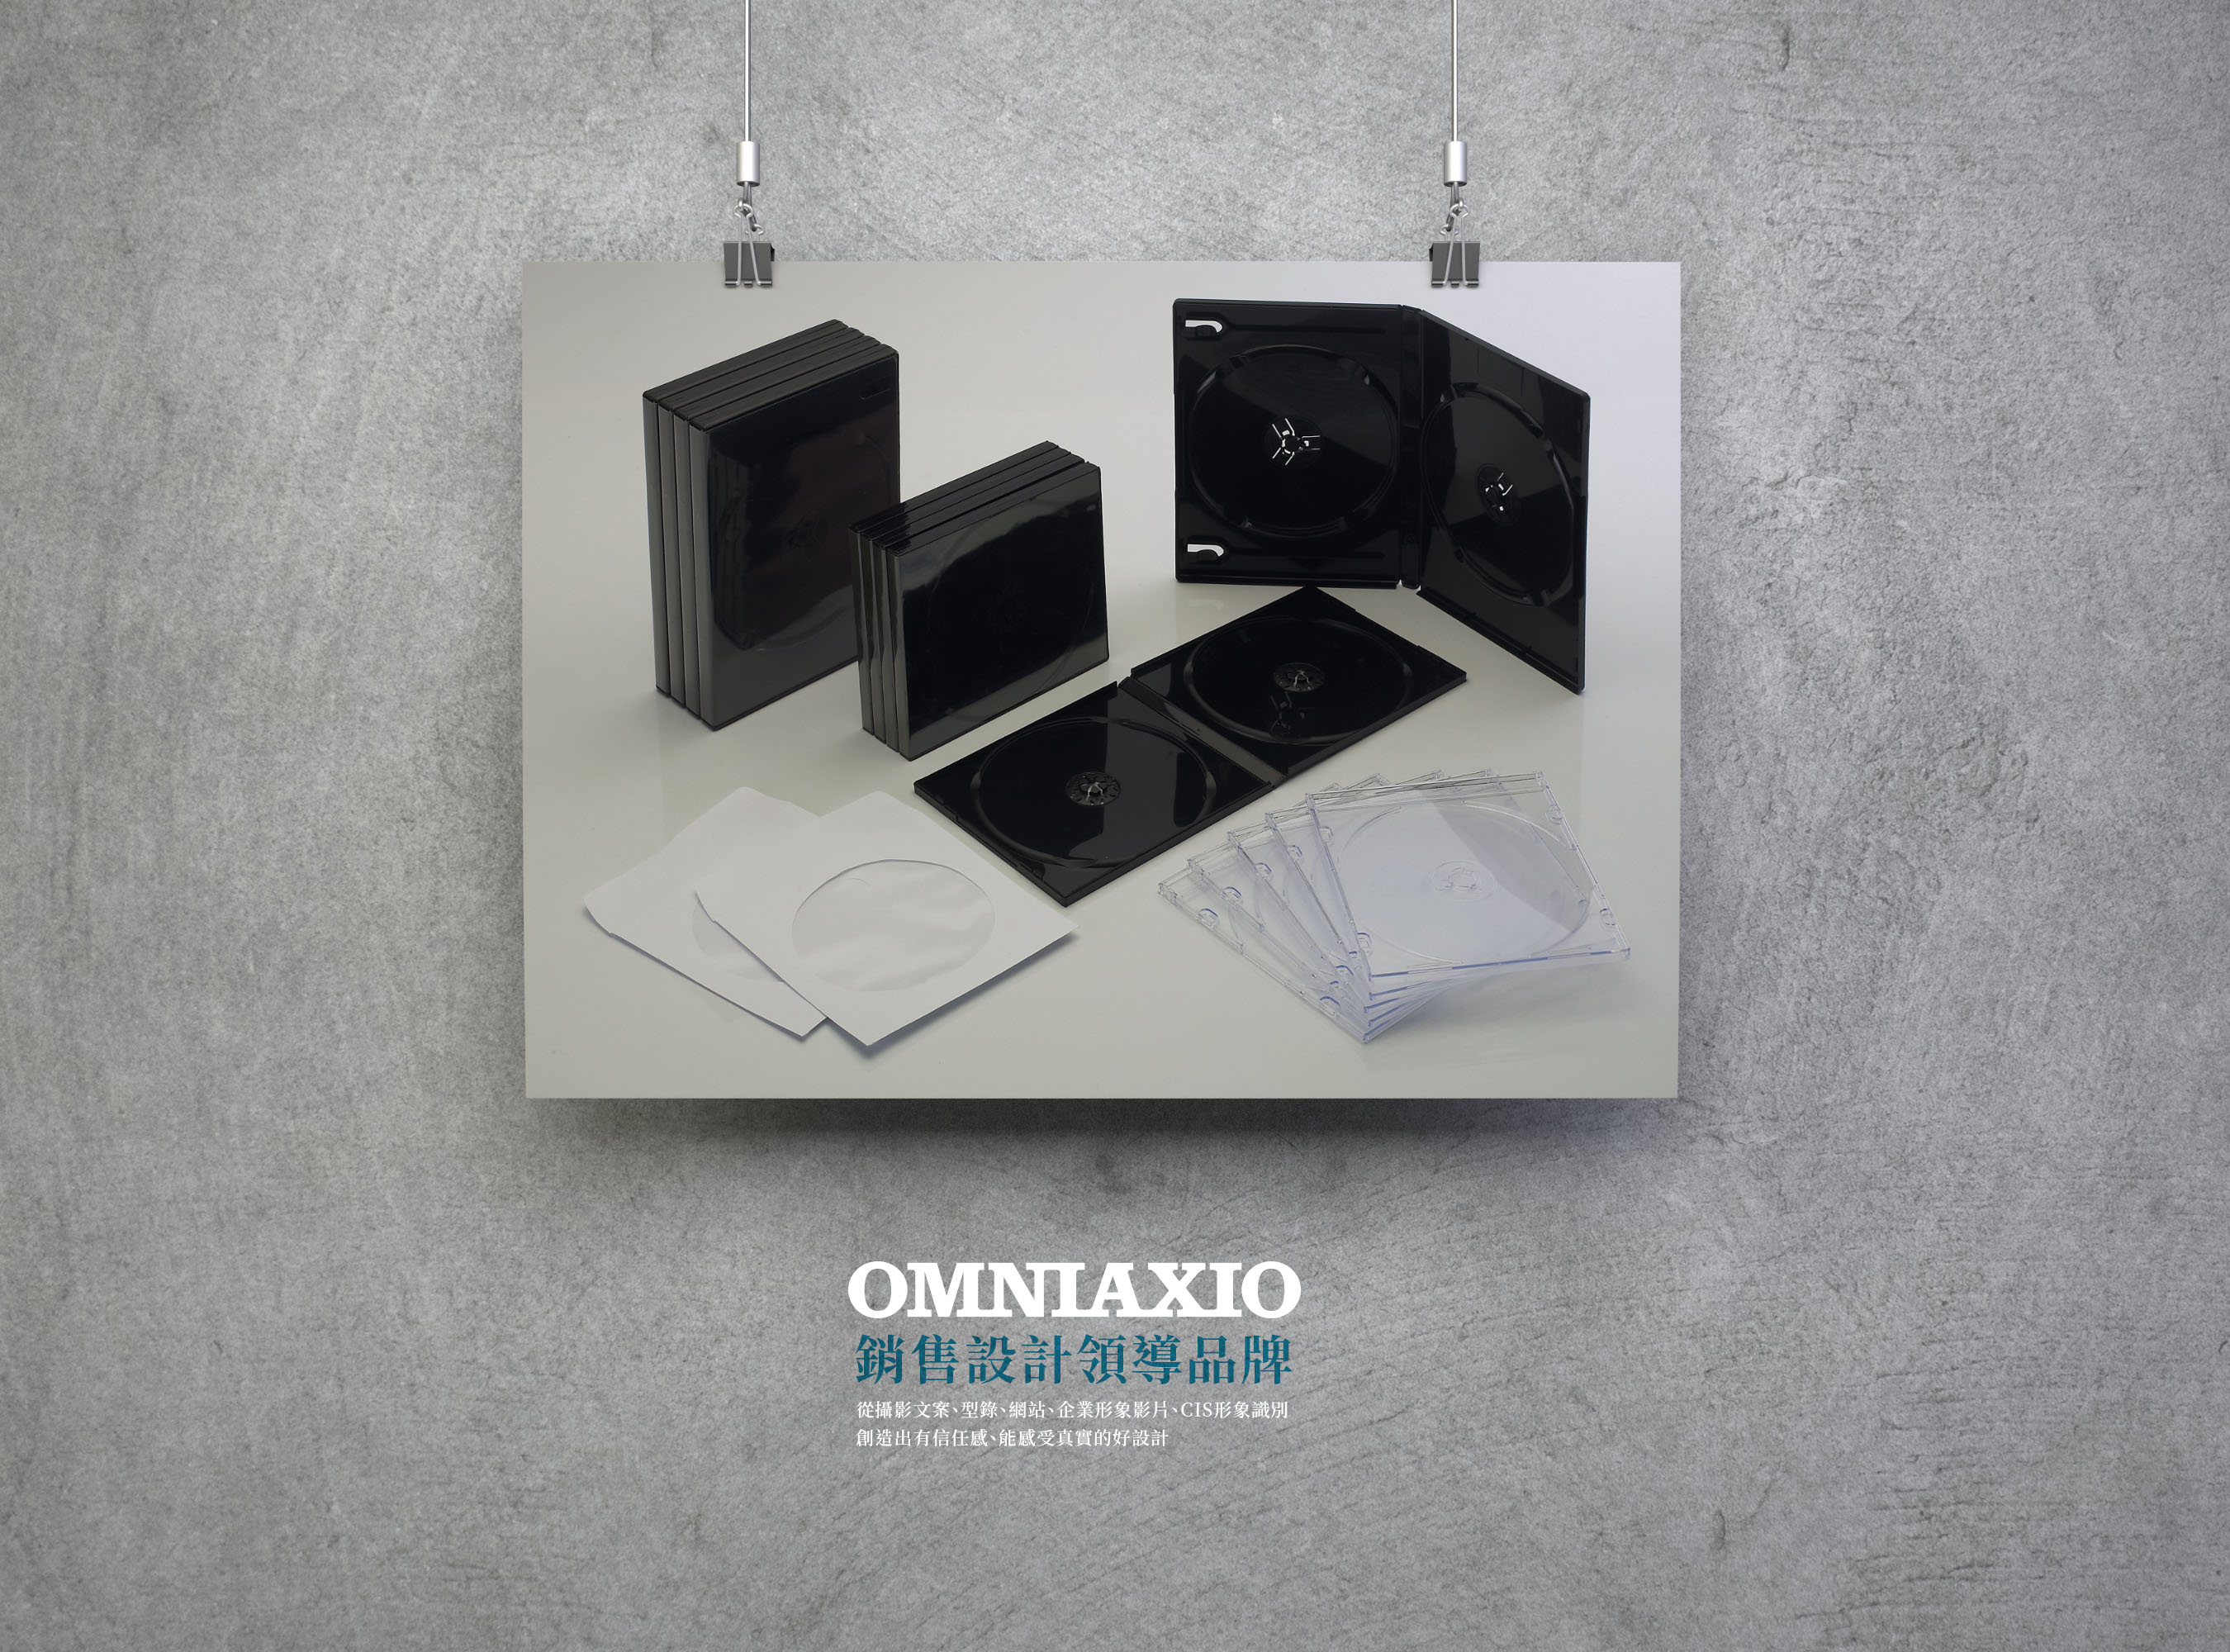 OMNIAXIO_當代指南針_外銷網站_專業攝影